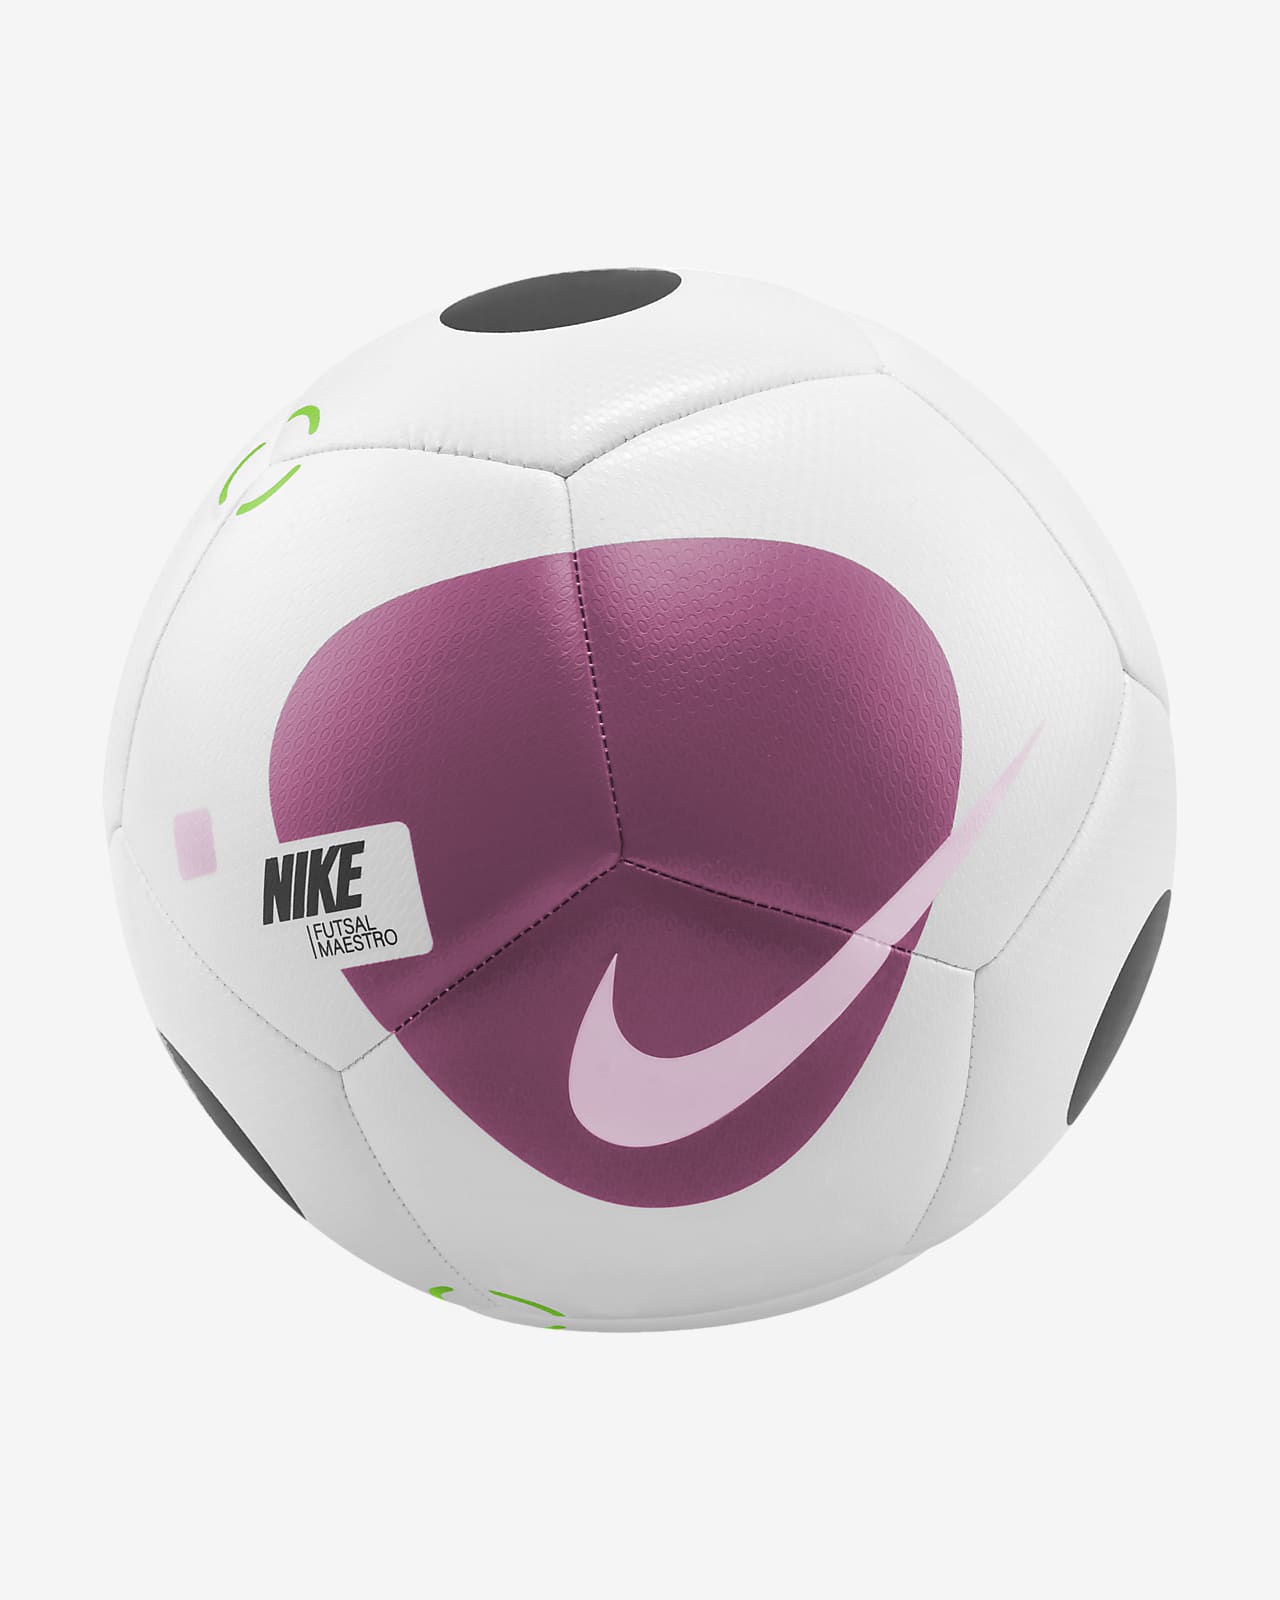 Canadá Preciso Instalar en pc Nike Futsal Maestro Balón de fútbol. Nike ES